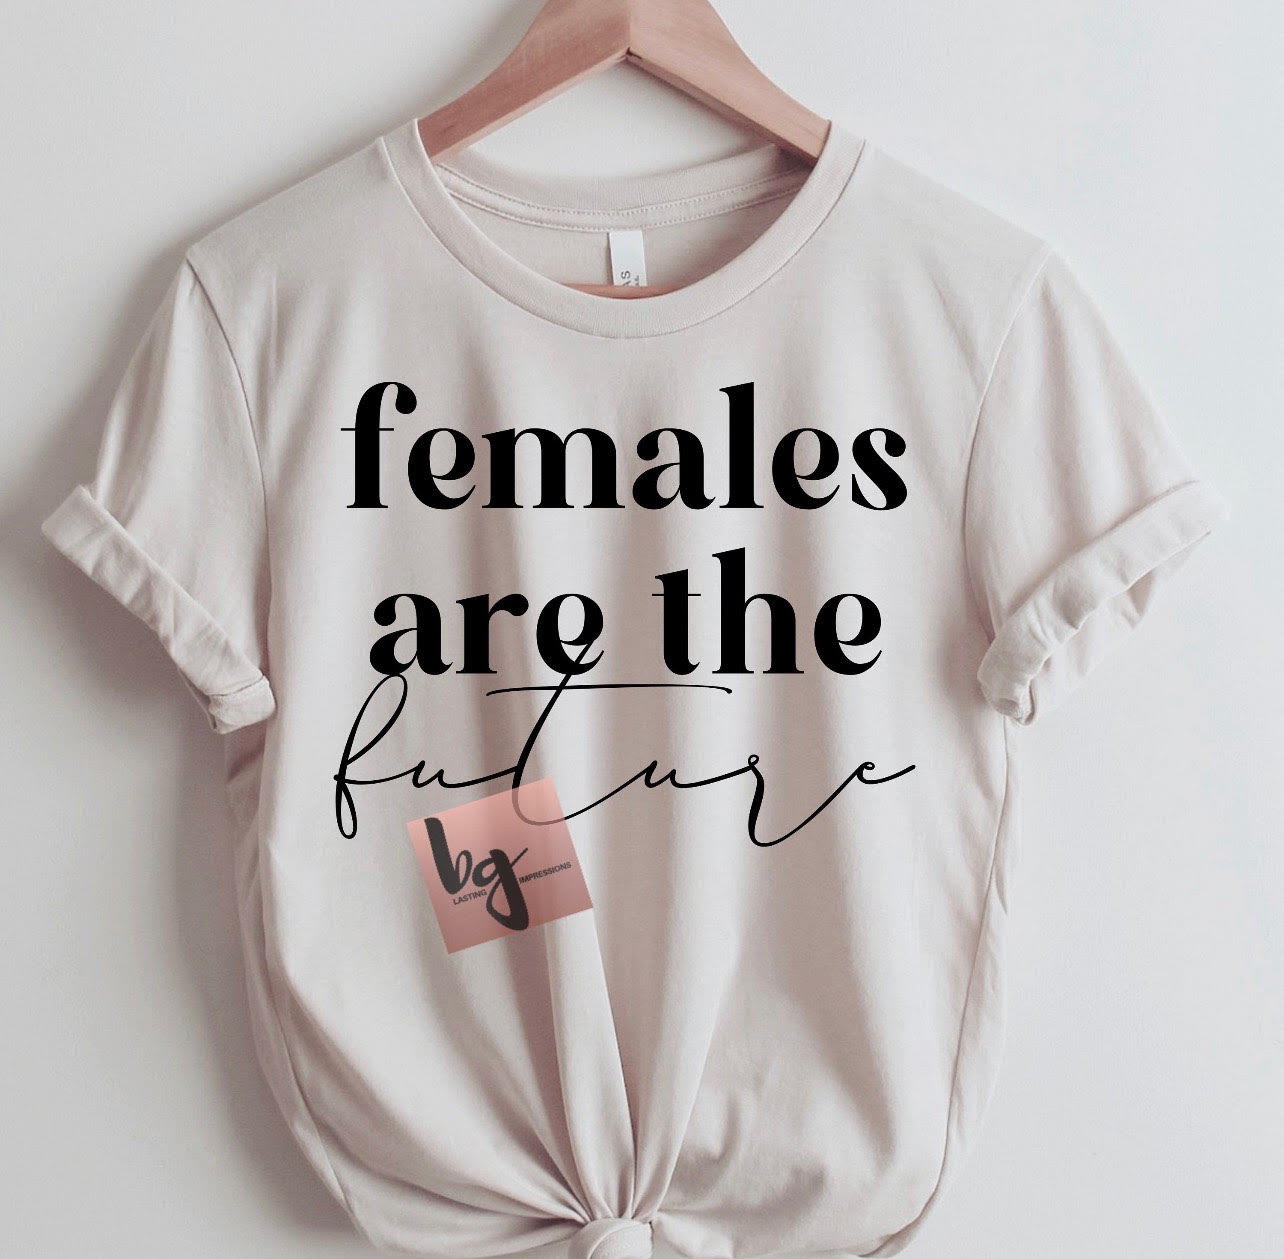 Females are the future